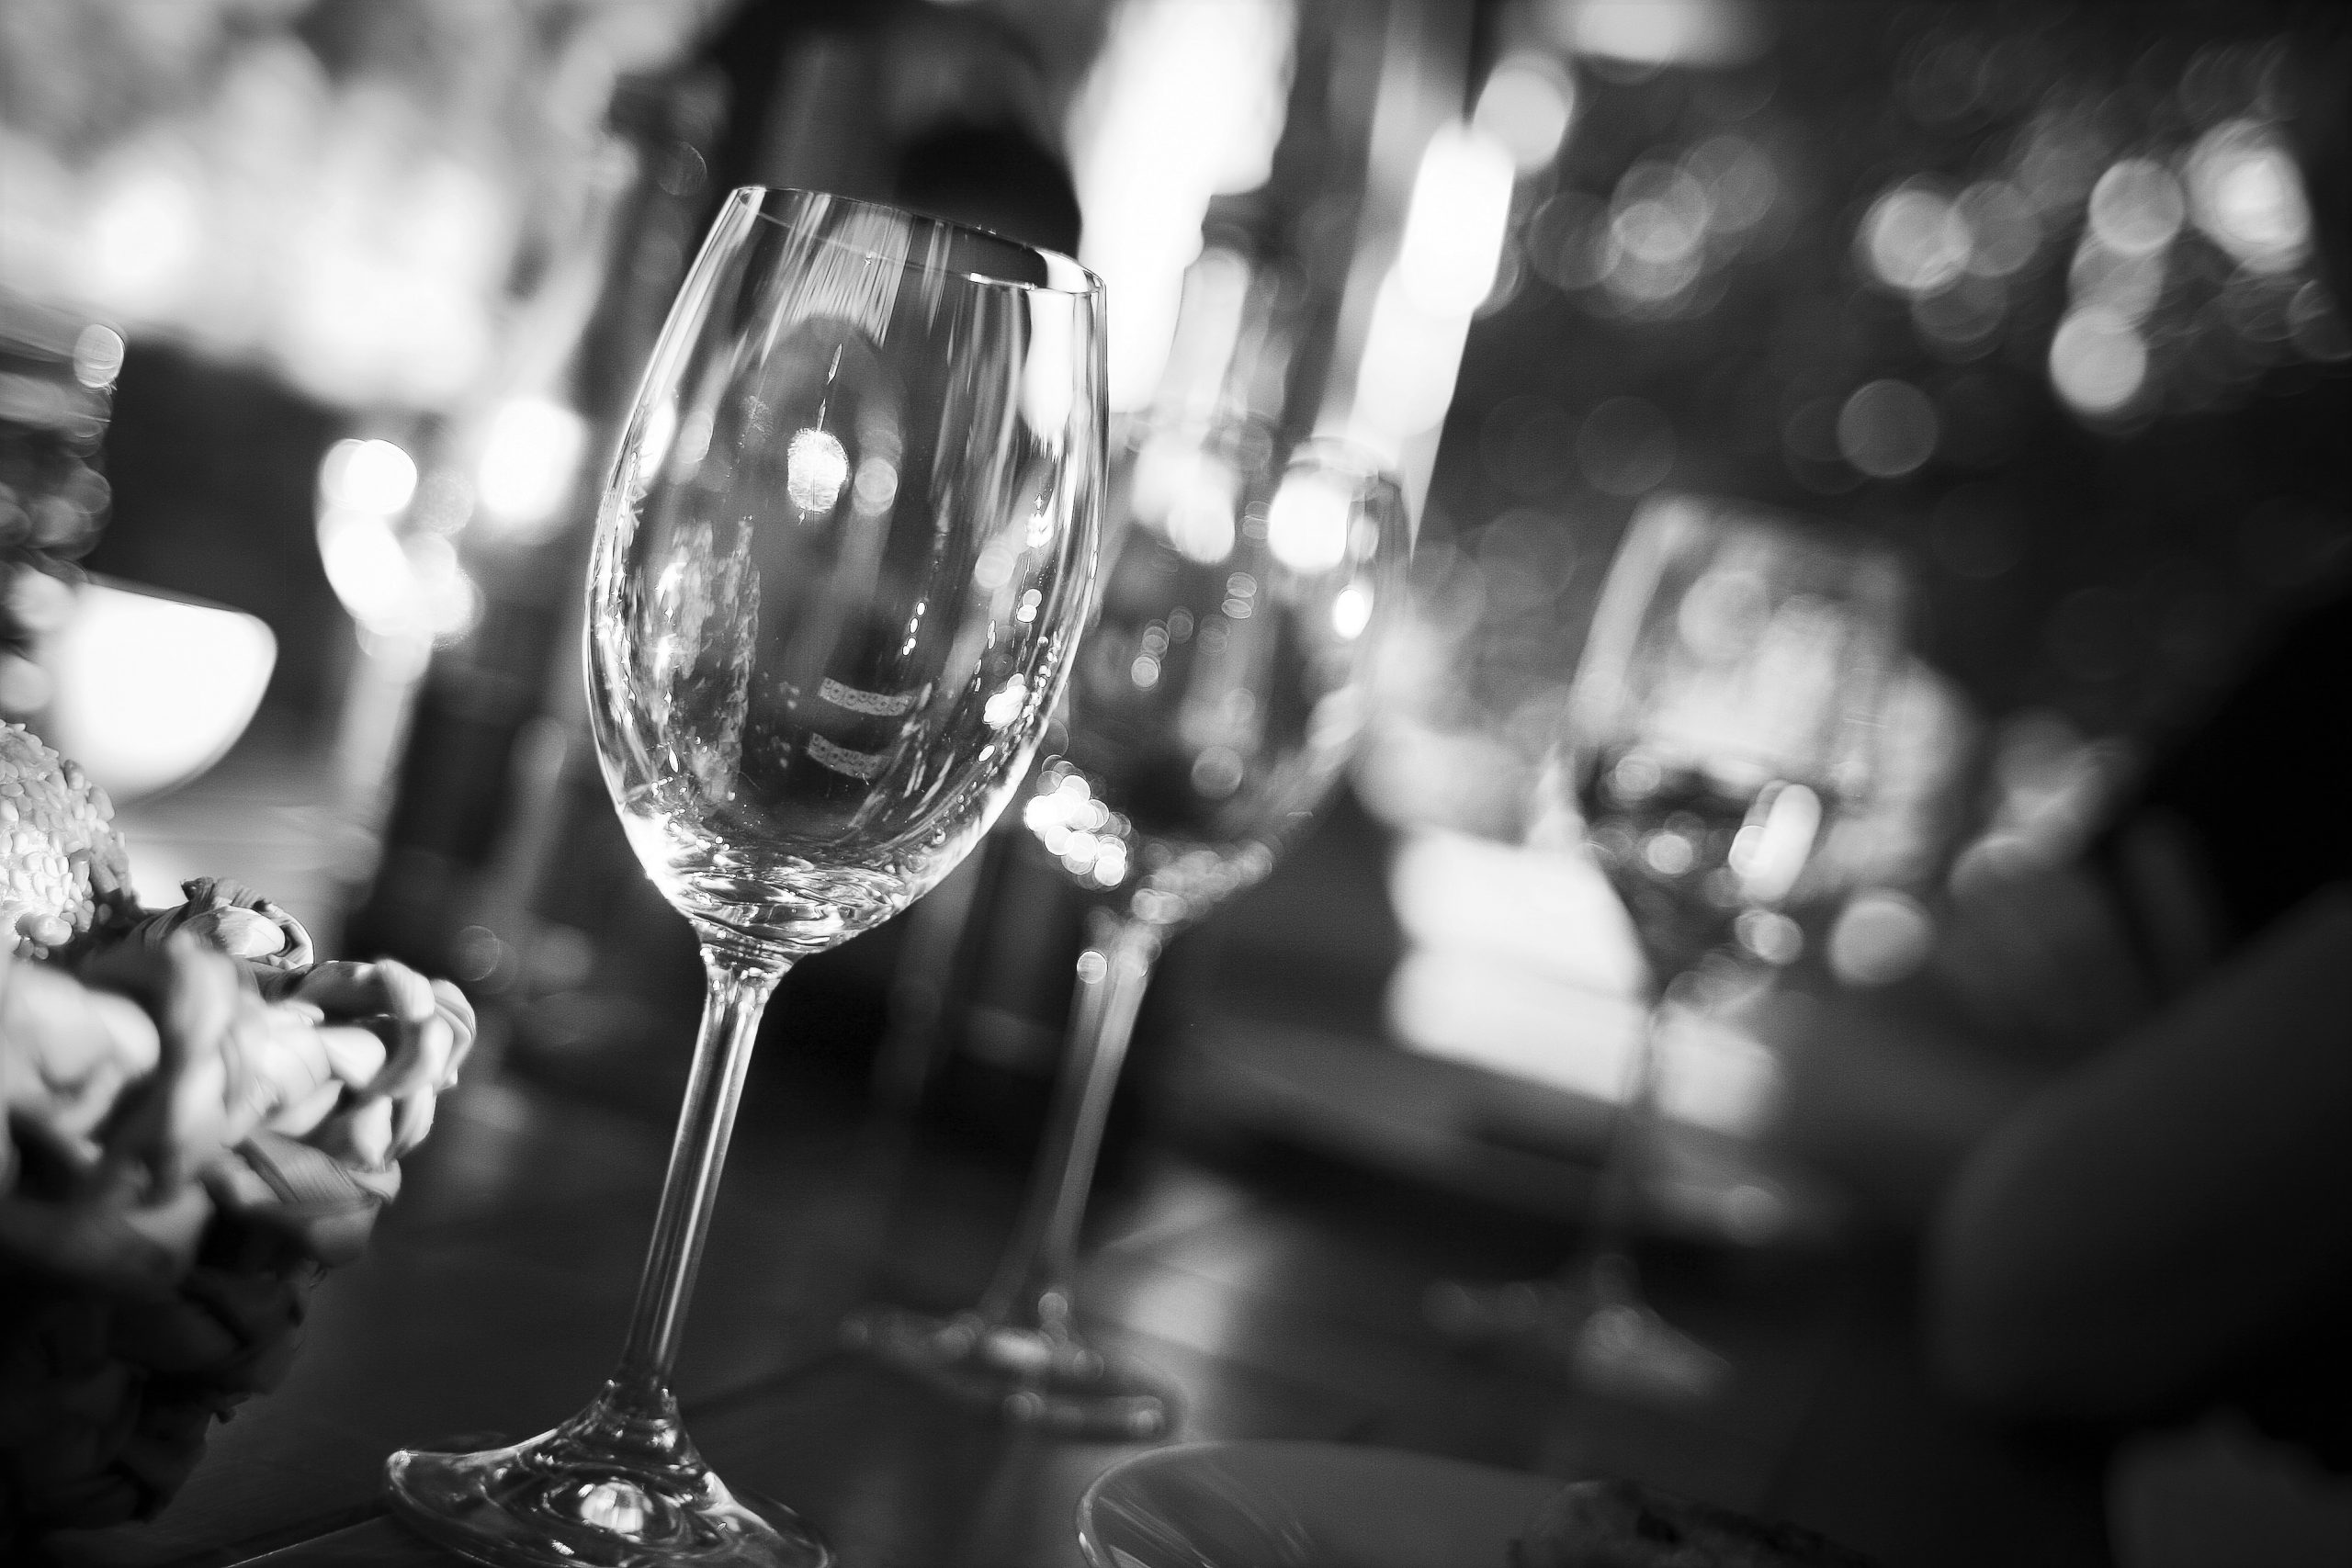 wine-glass-on-restaurant-table-225228.jpg